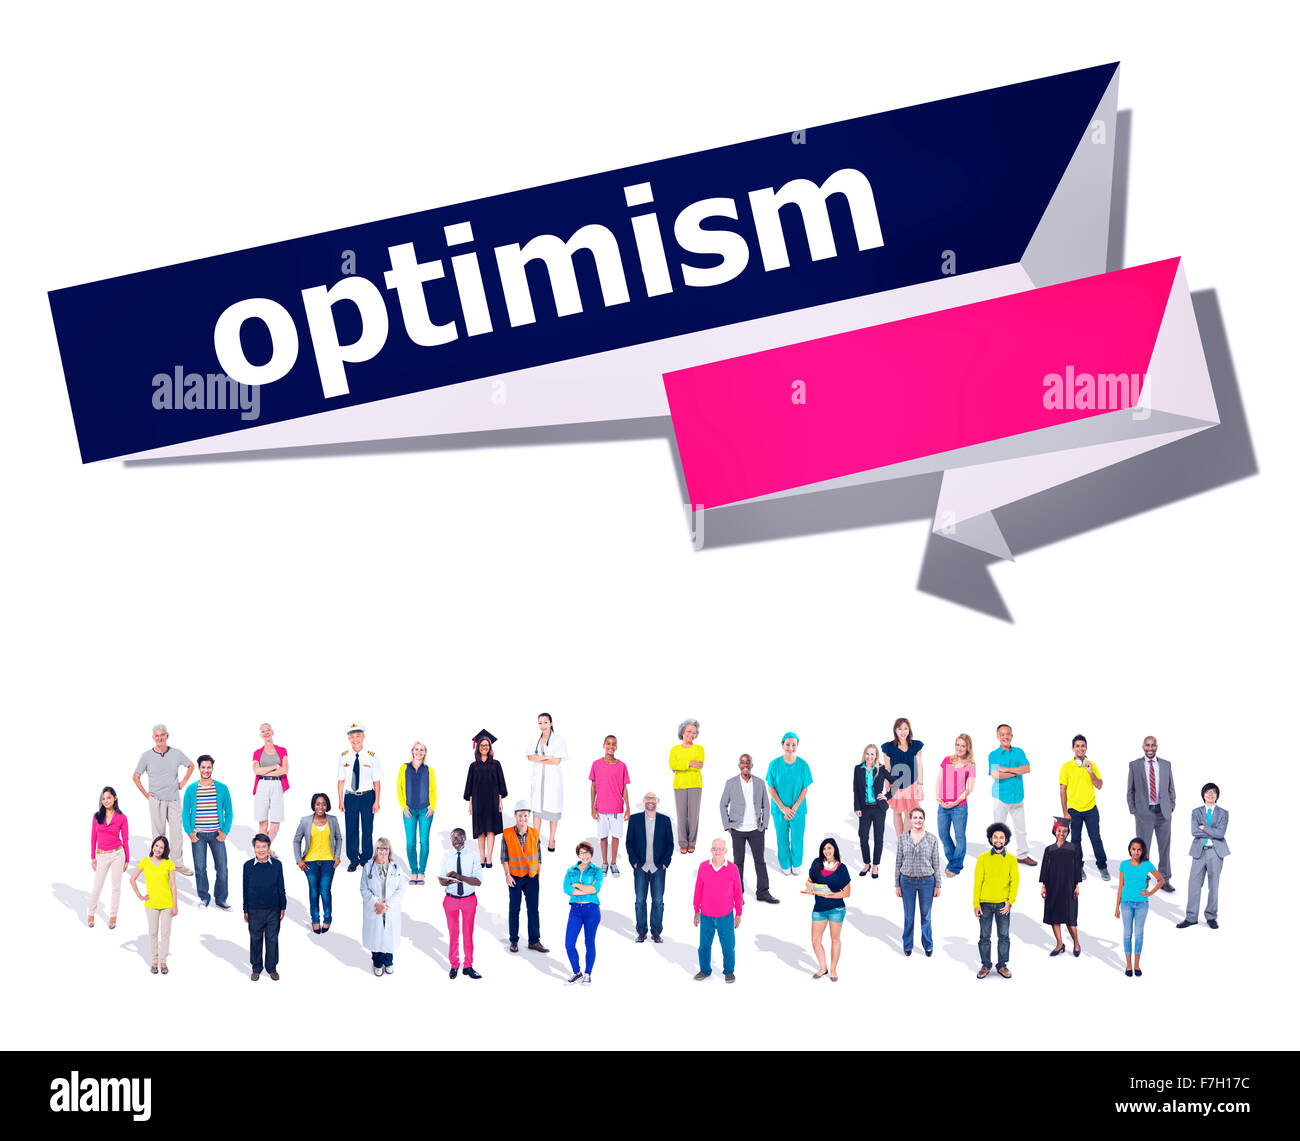 Optimism Attitude Hopeful Positive Thinking Concept Stock Photo